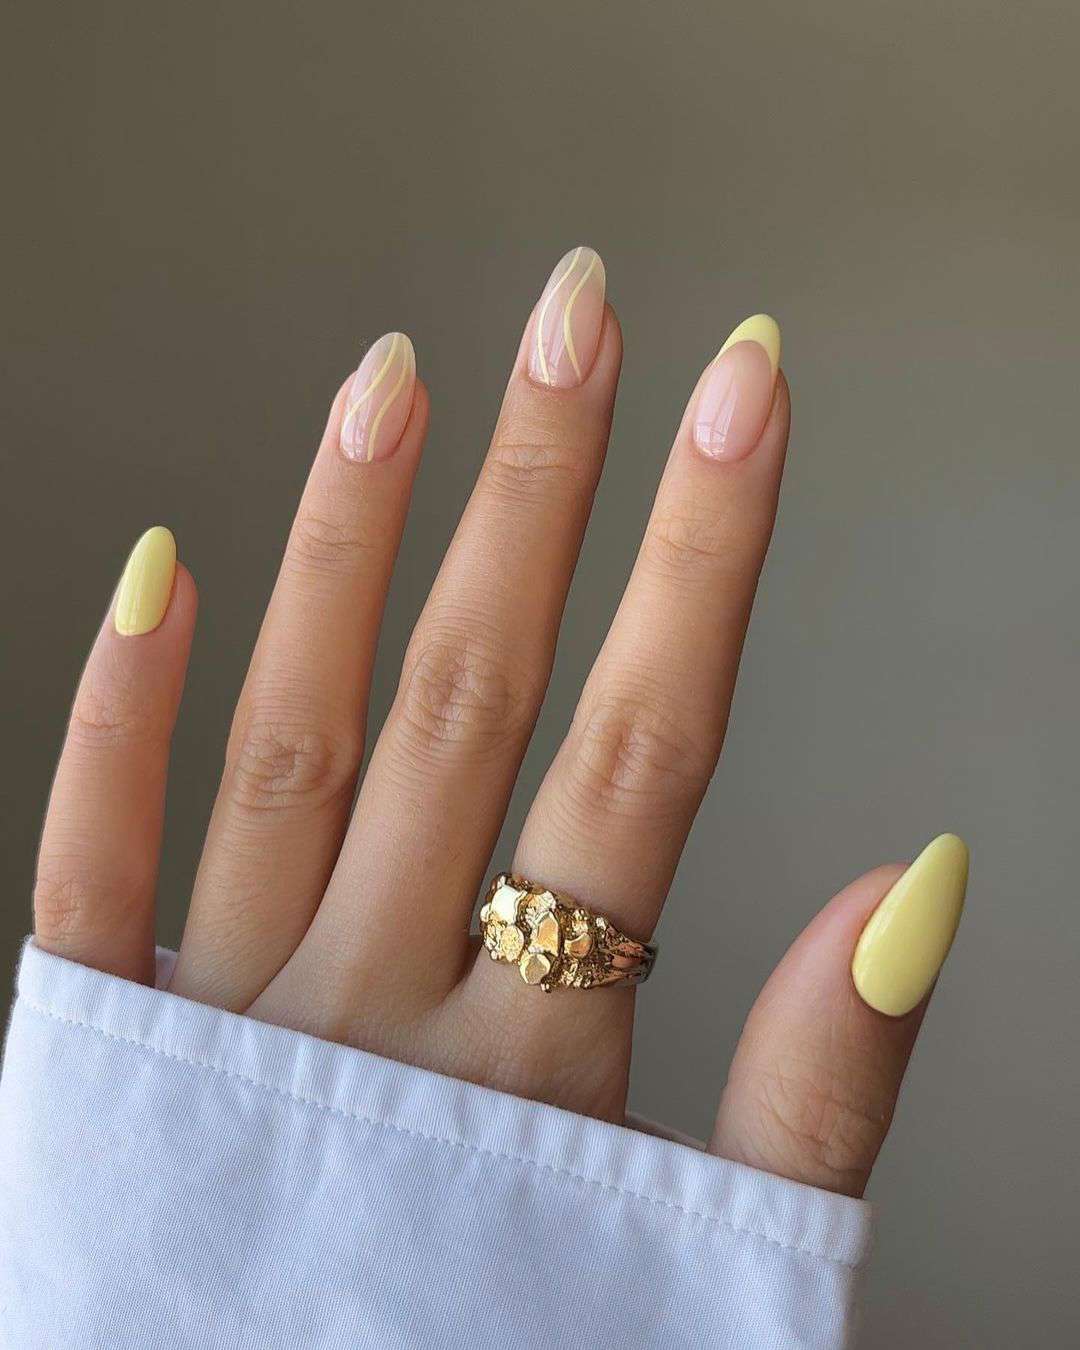 Ideas de uñas que favorecen mucho si tienes la piel clara: Diseños sutiles